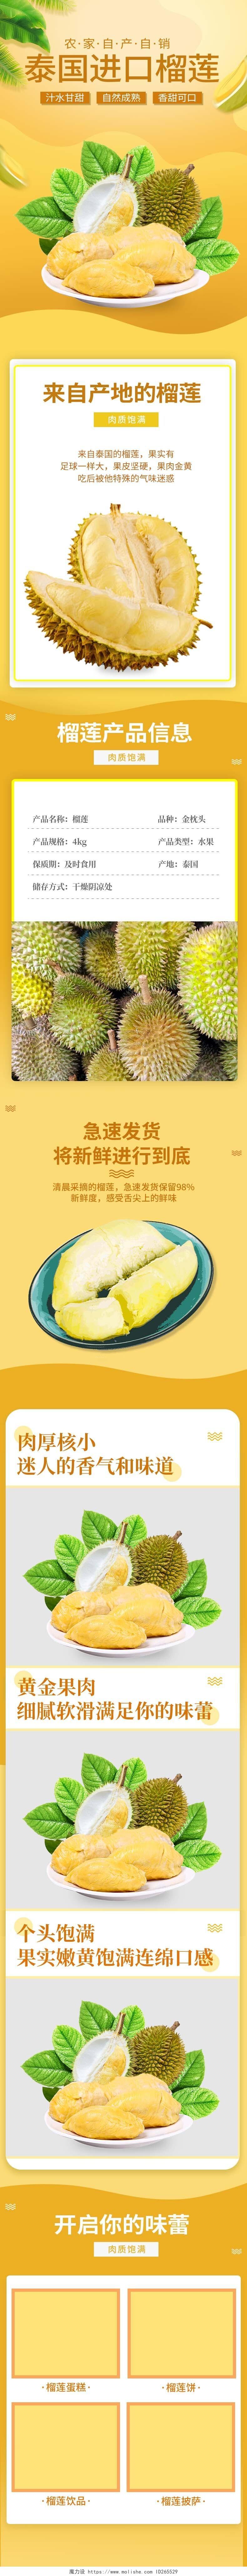 黄色自然清新泰国进口榴莲水果详情页